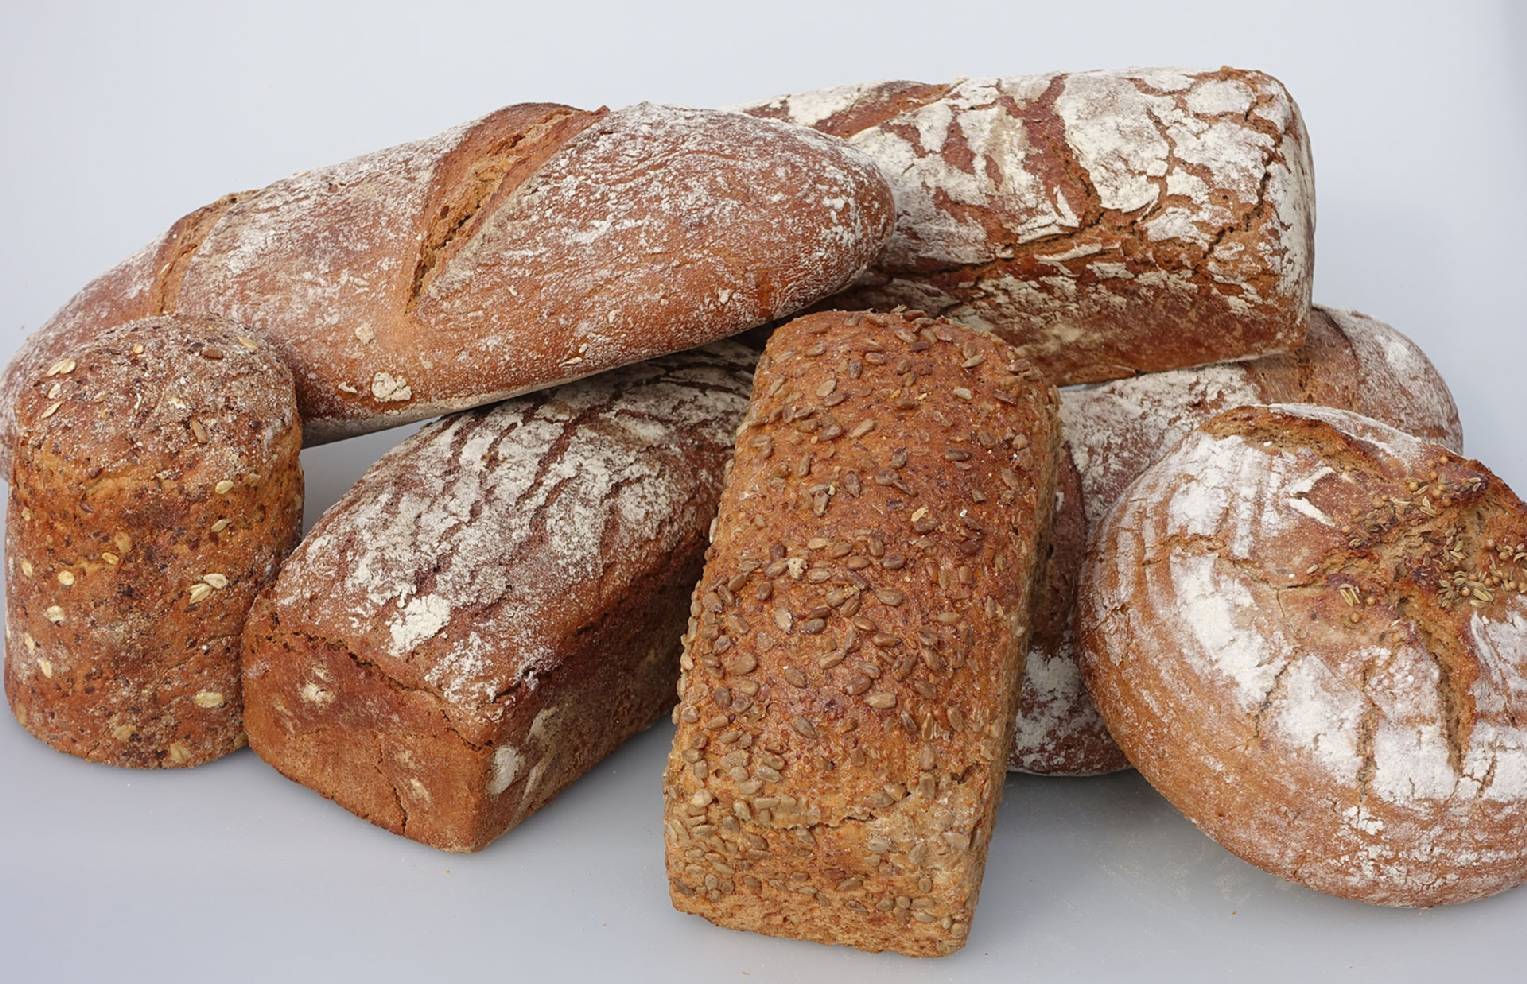 In unserem Café in Frankfurt könne Sie auch Brot kaufen - unser Brot ist ein reines Naturprodukt